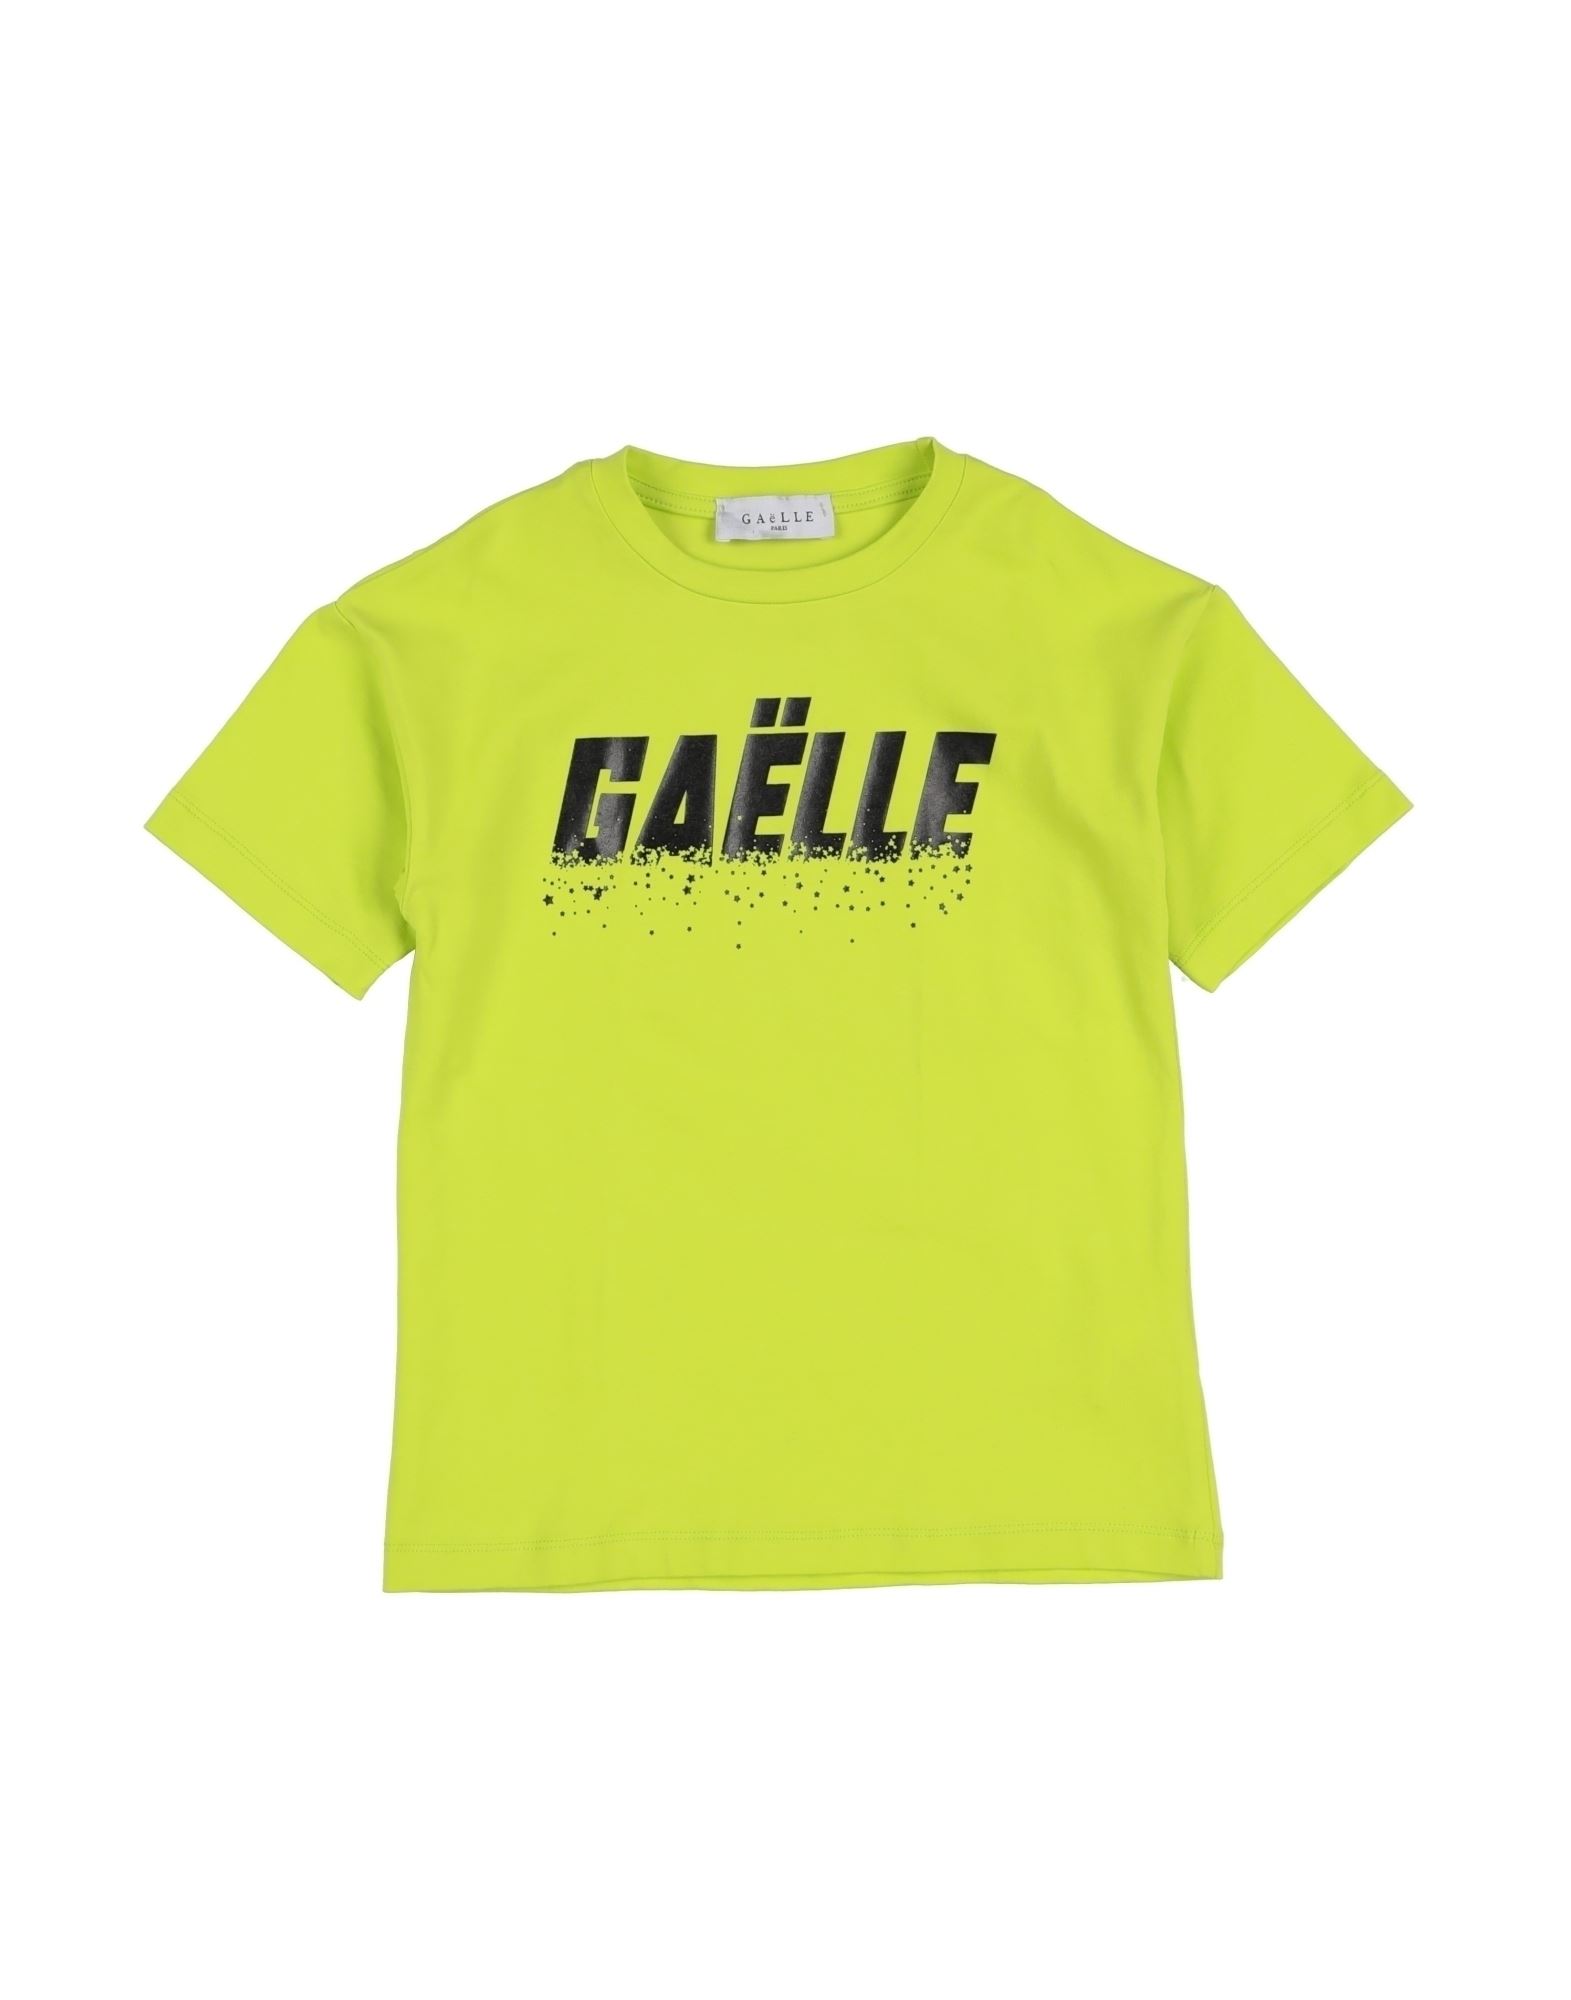 GAëLLE Paris T-shirts Kinder Hellgrün von GAëLLE Paris